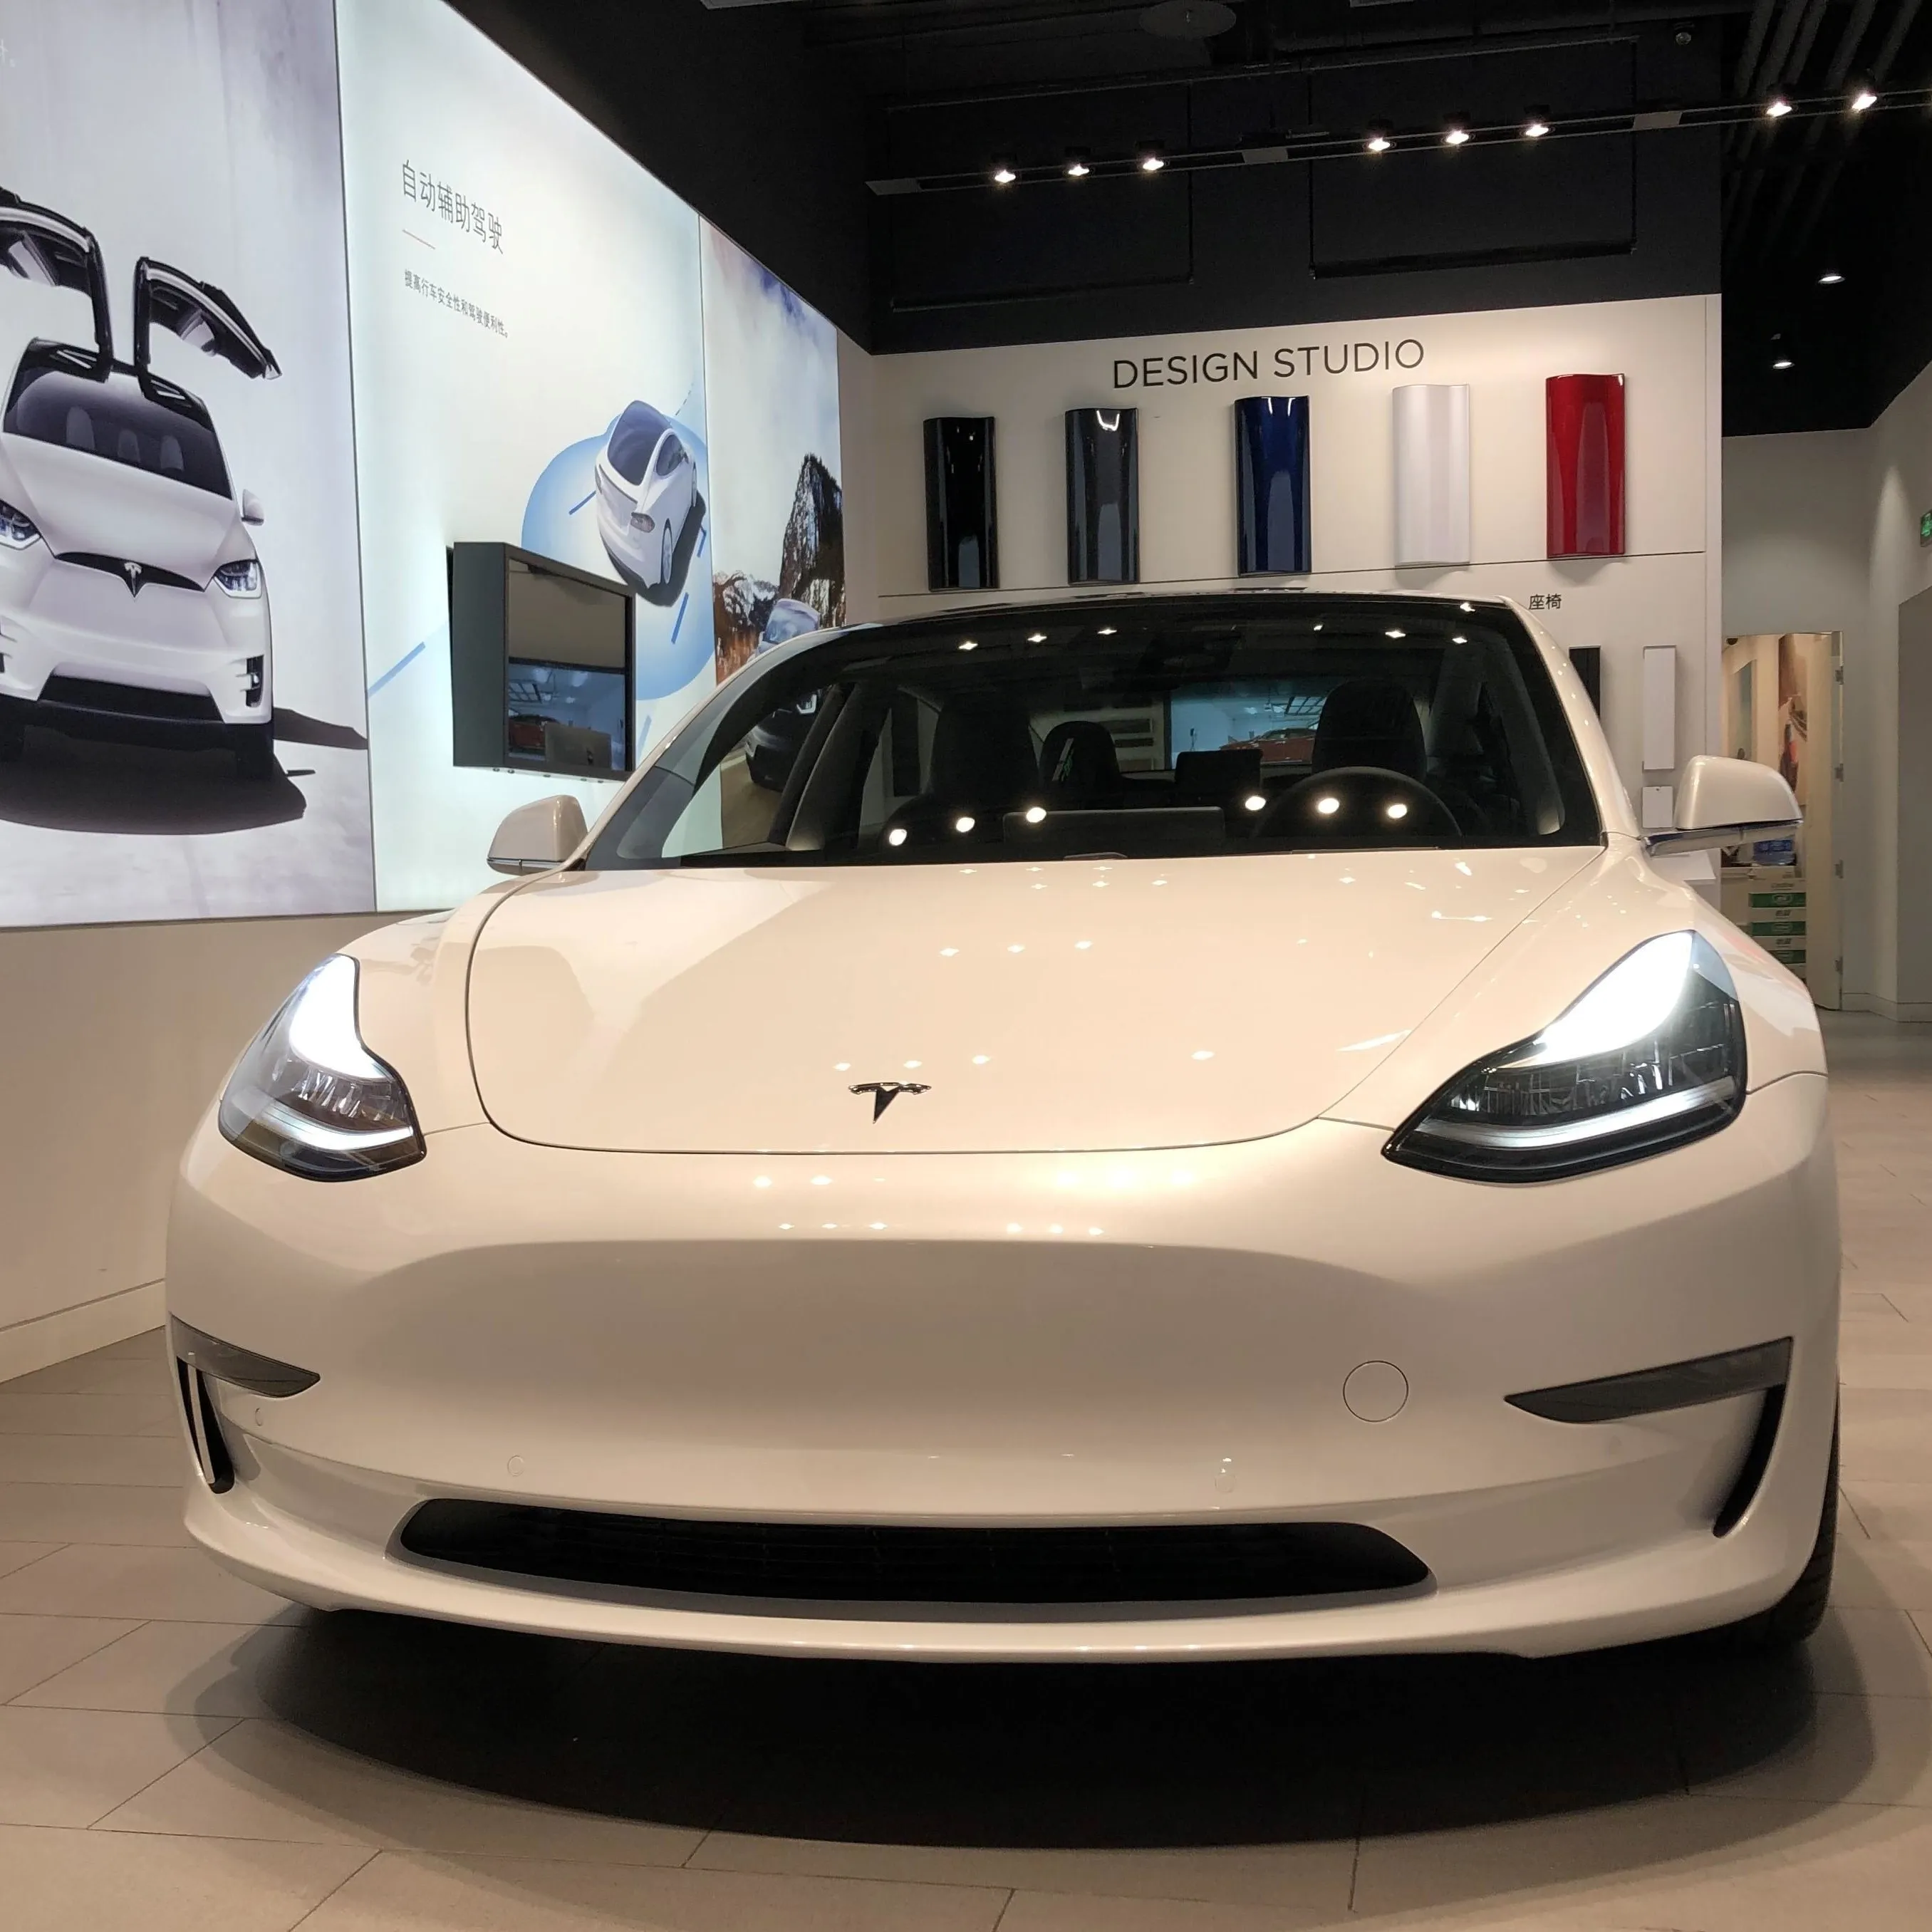 Stokta mevduat sipariş düşük fiyat kullanılan Tesla modeli Y süper güvenli dayanıklılık satılık 615 saf elektrikli araba Tesla modeli Y E araba